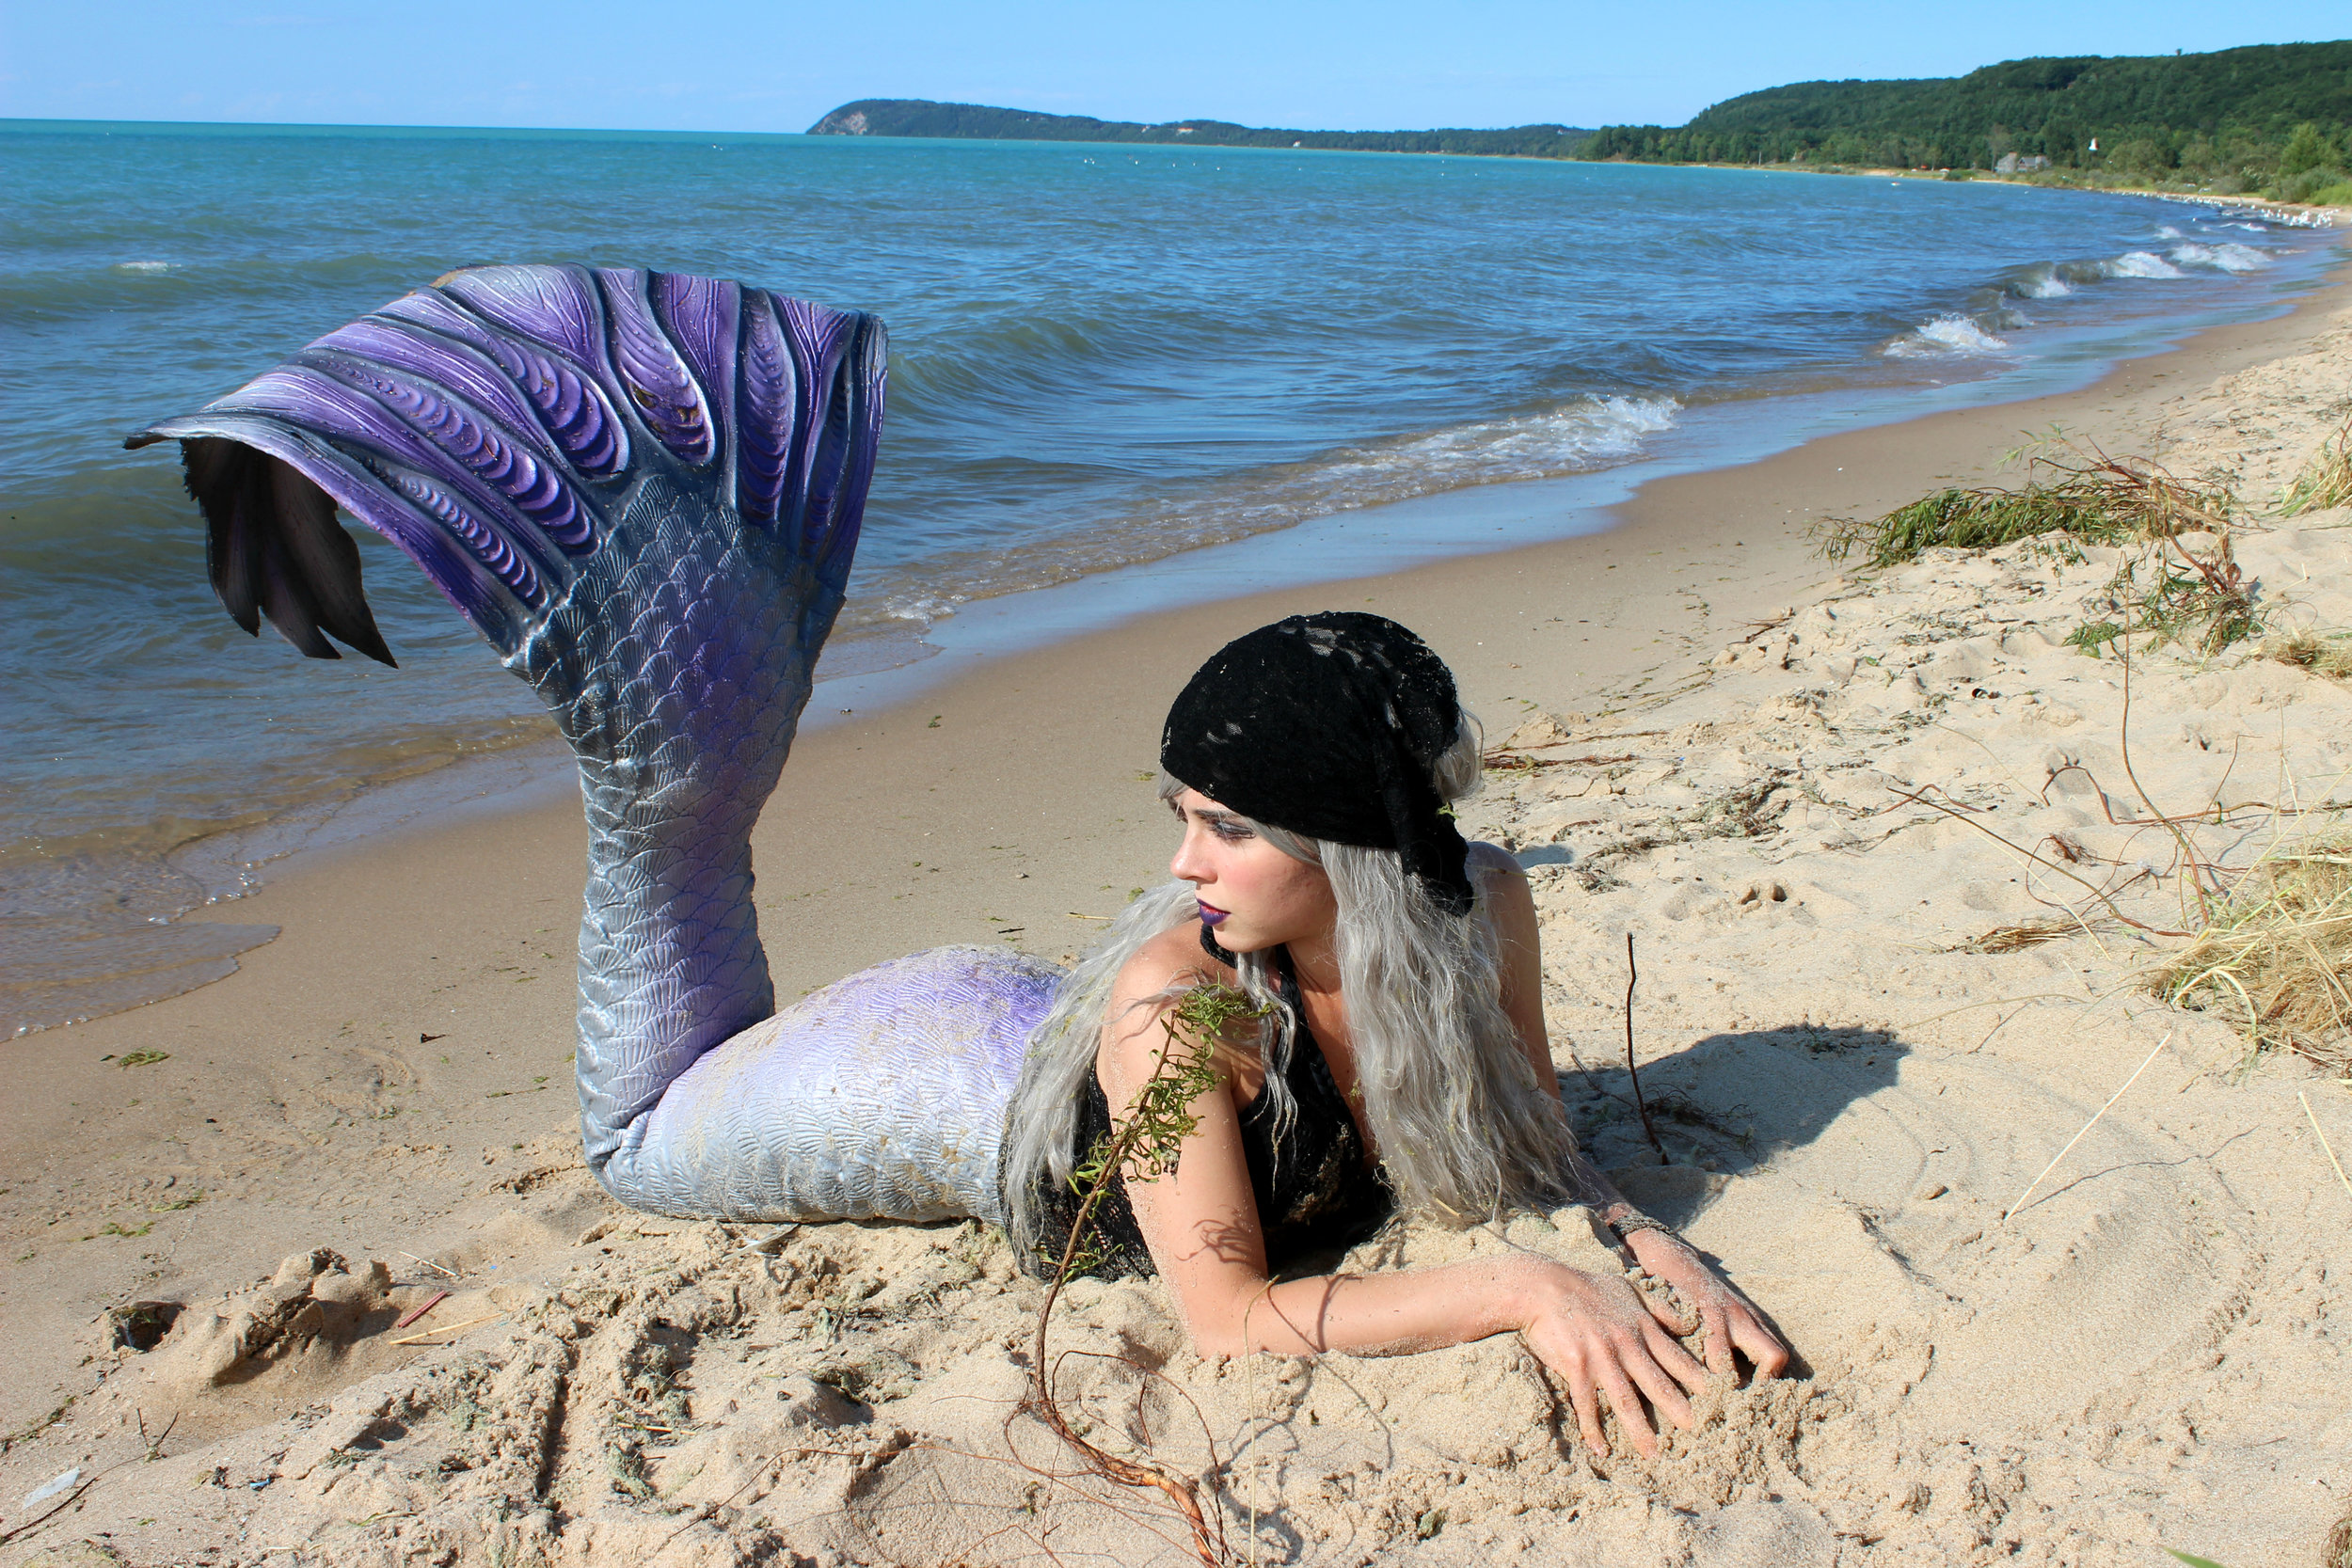 Mermaid-Phantom-pirate-life-for-me-beach-looking-back.jpg